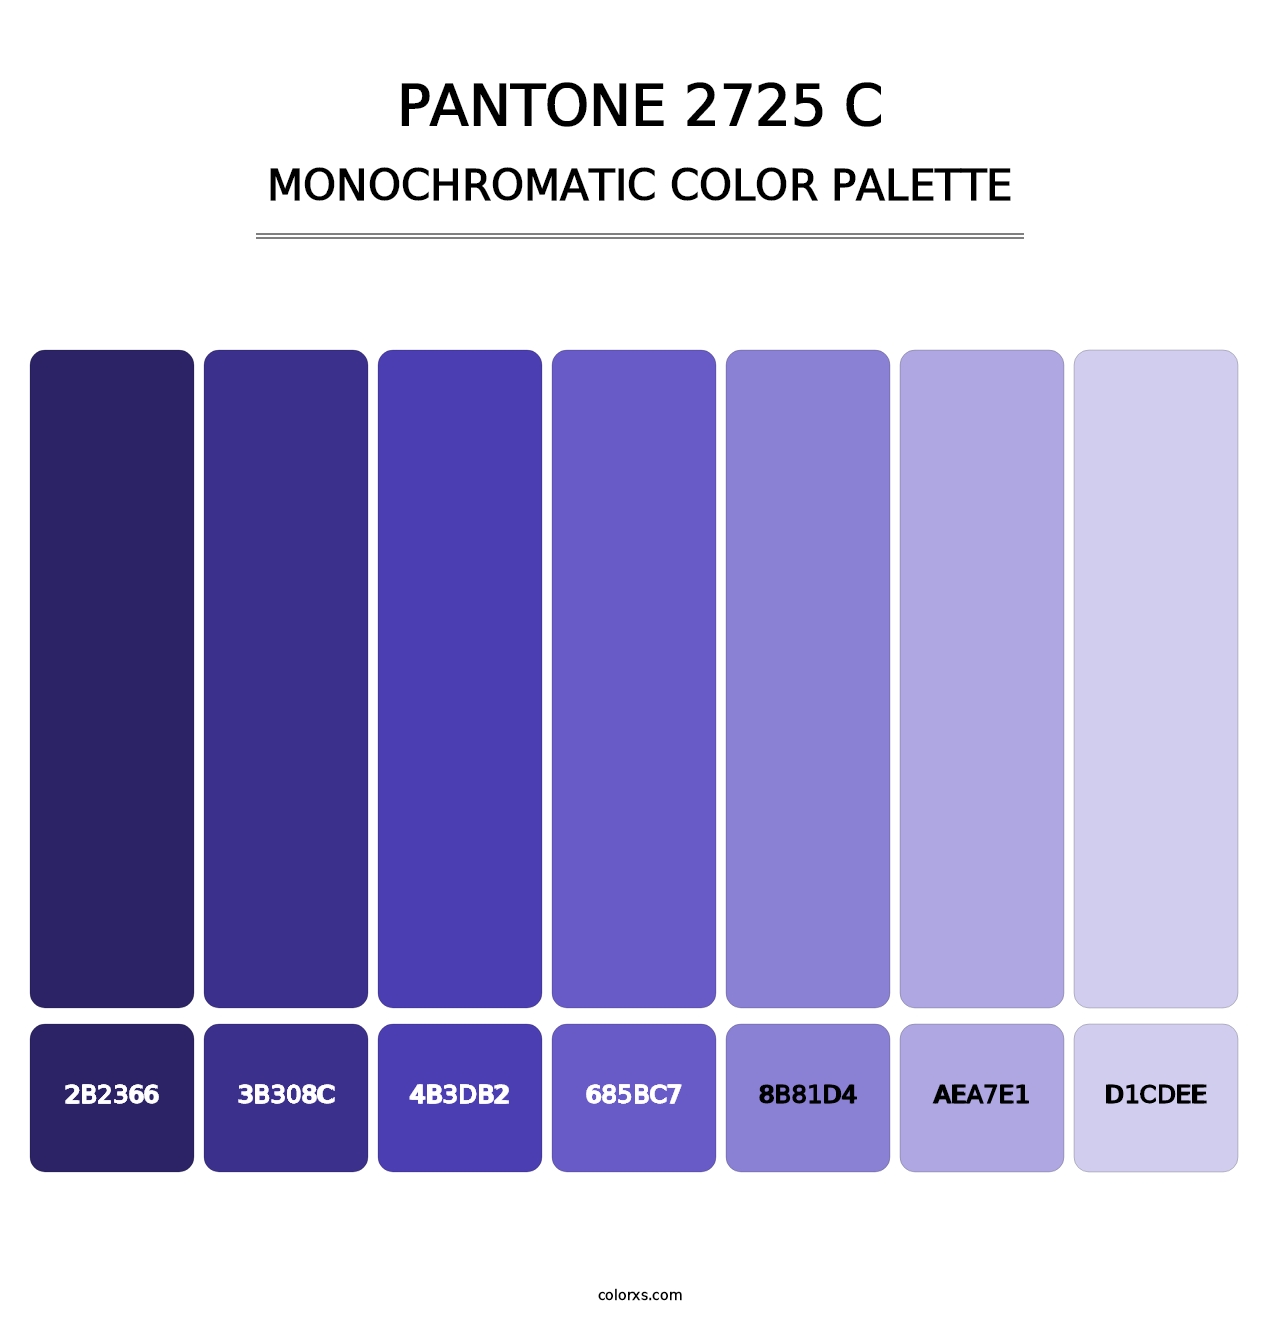 PANTONE 2725 C - Monochromatic Color Palette